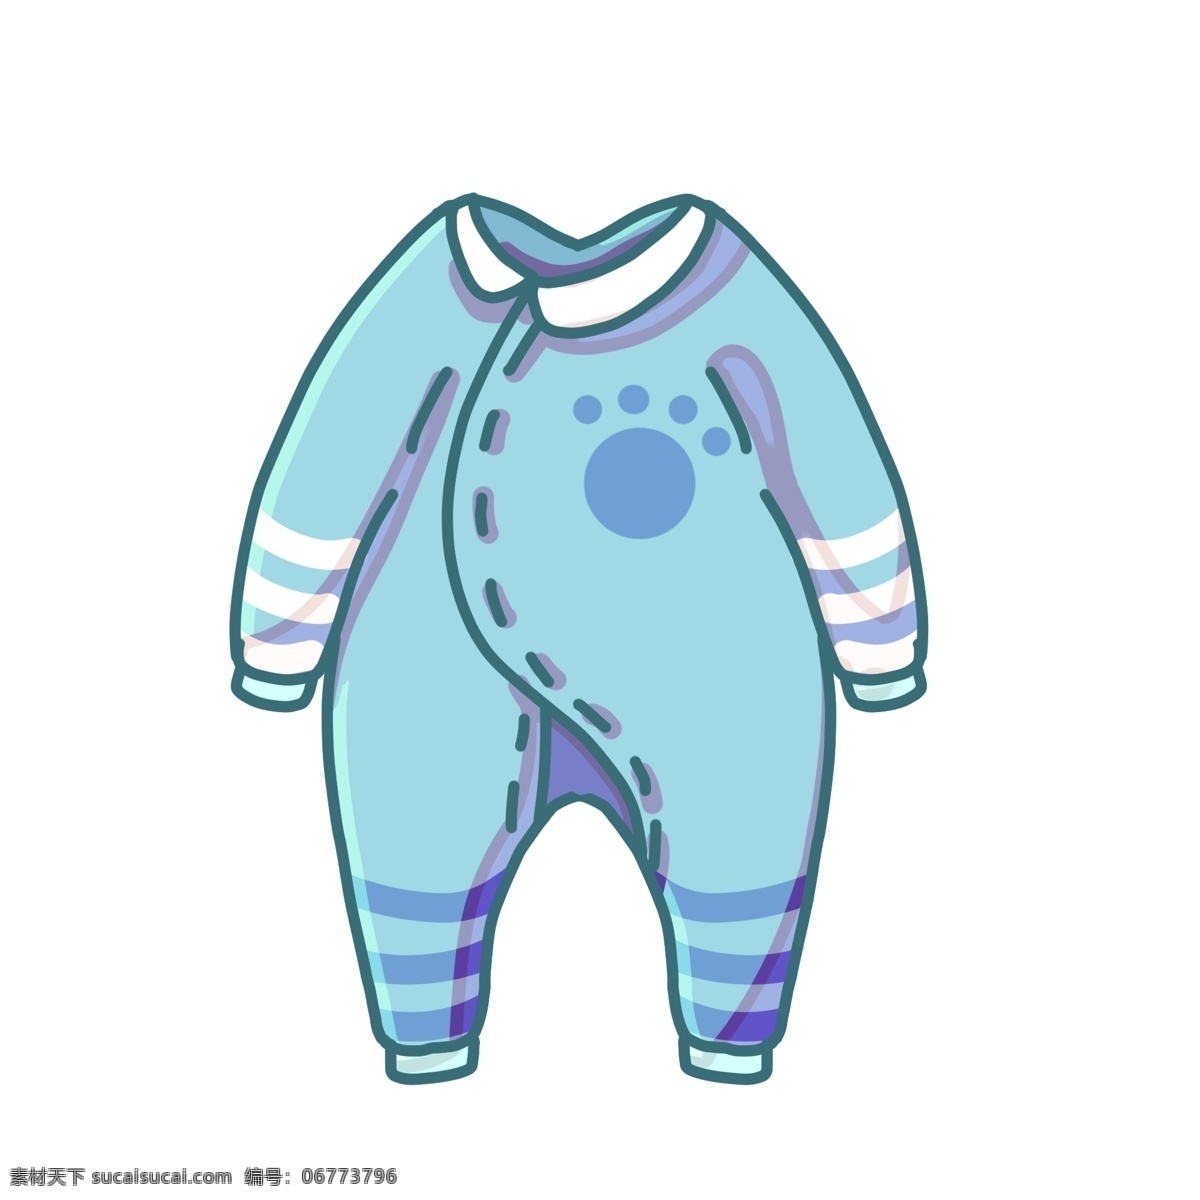 蓝色 儿童服装 插画 蓝色的服装 漂亮的服装 卡通插画 婴儿服装 衣服 服饰 儿童穿着